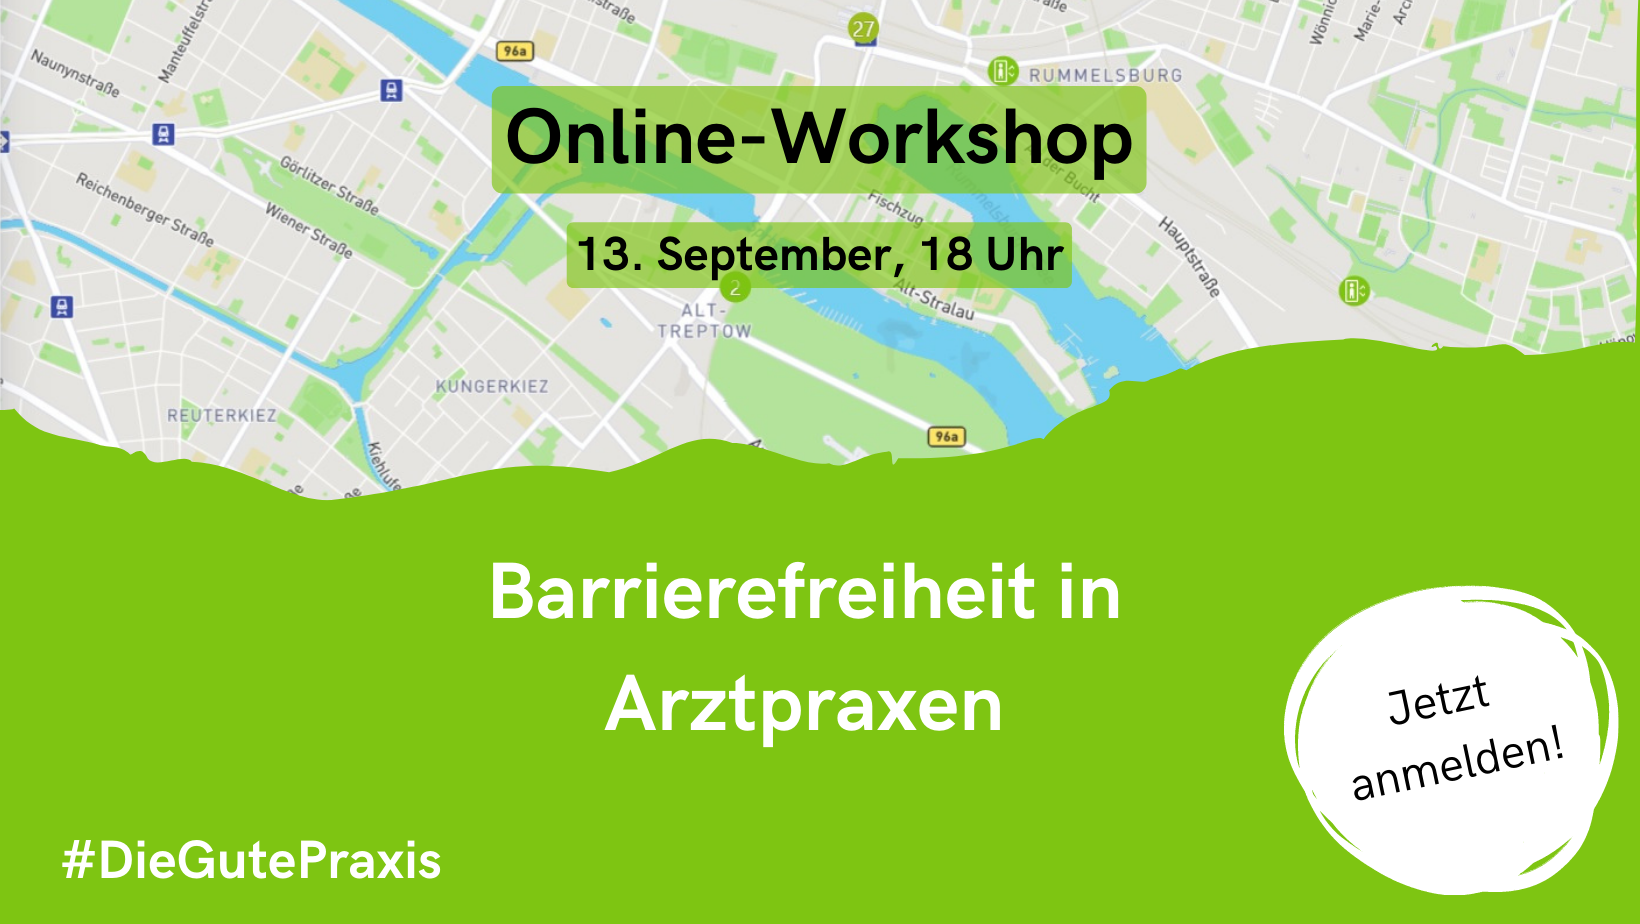 Oben ein Ausschnitt aus einem Stadtplan. Darauf der Text: "Online-Workshop, 13. September, 18 Uhr". Unten eine Grüne Fläche darauf der Text: "Barrierefreiheit in Arztpraxen. #DieGutePraxis. Jetzt anmelden!" 